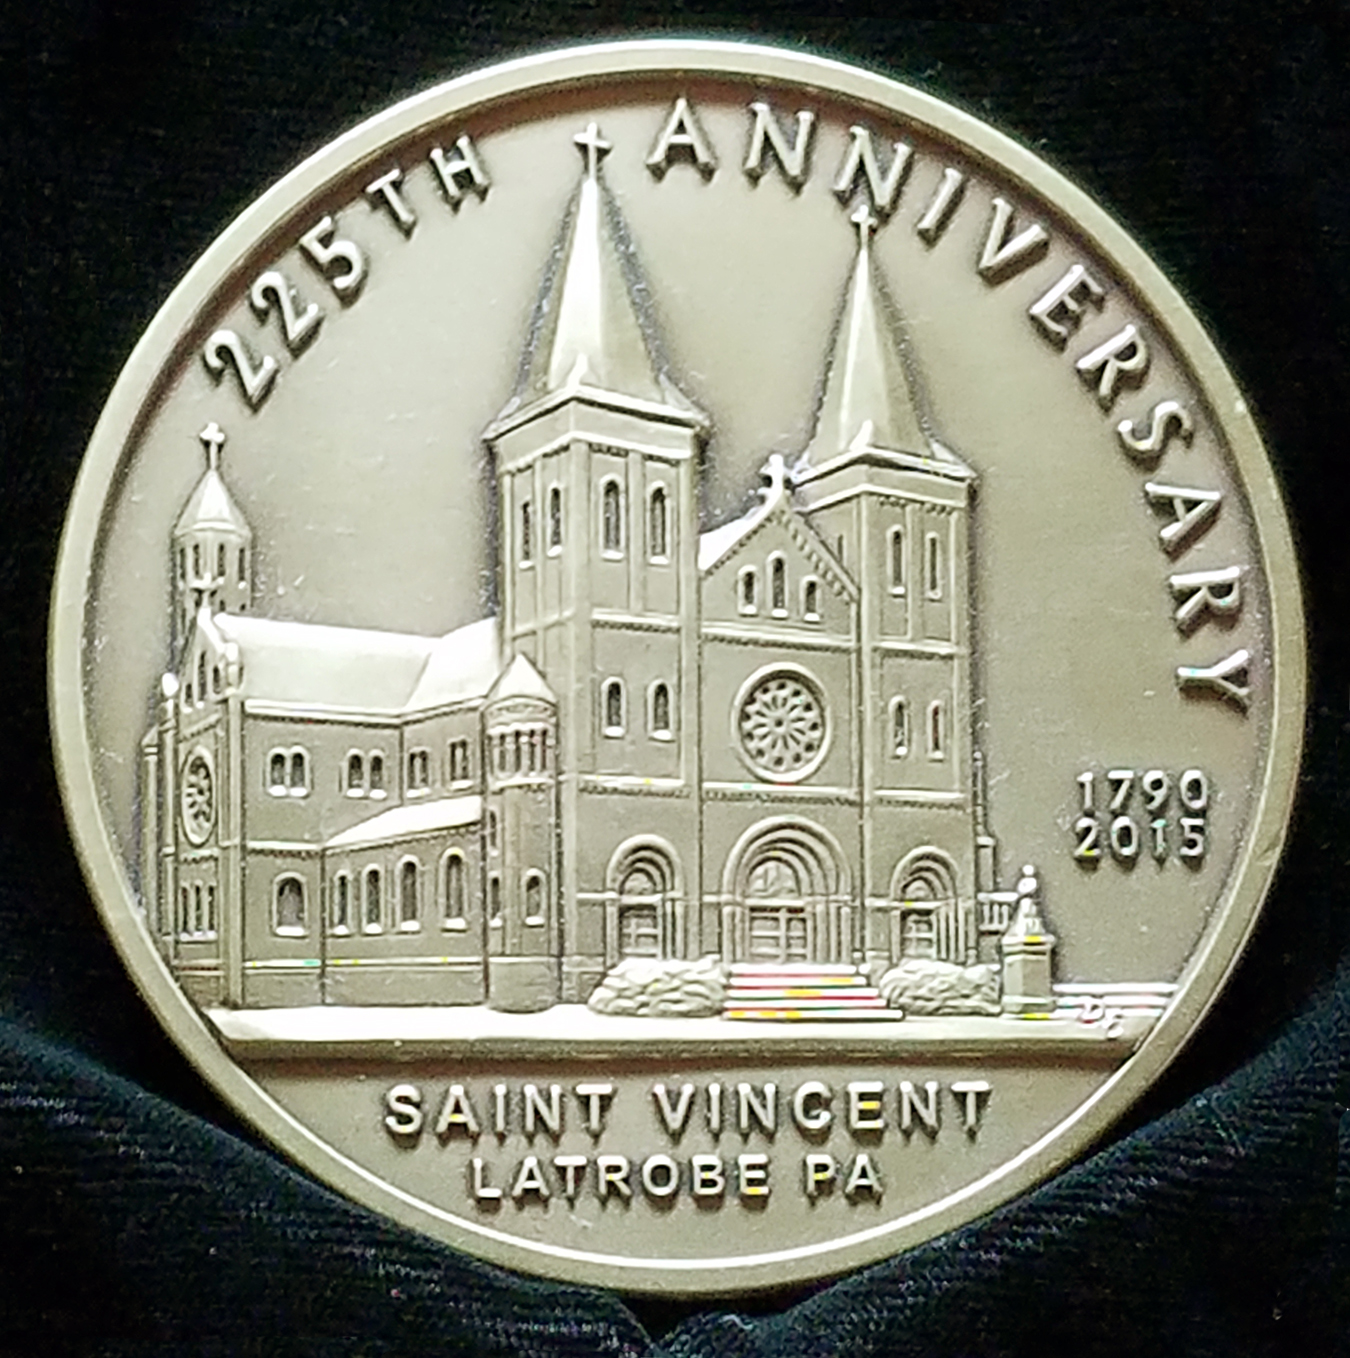 St Vincent Medal reverse